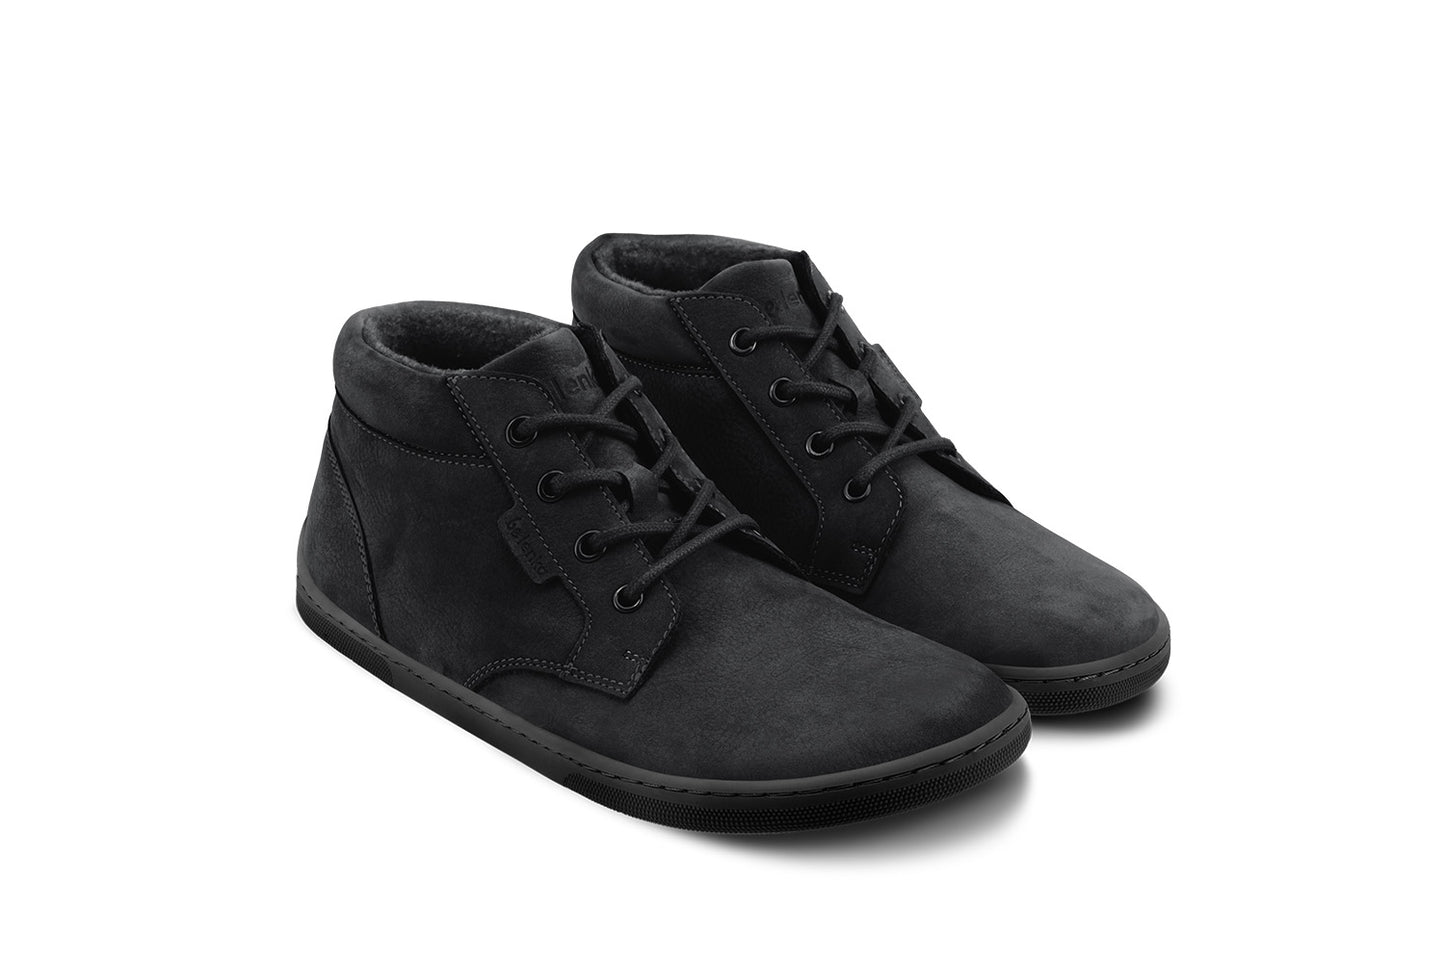 Be Lenka Synergy Barefoot Shoes (Fleece) - All Black